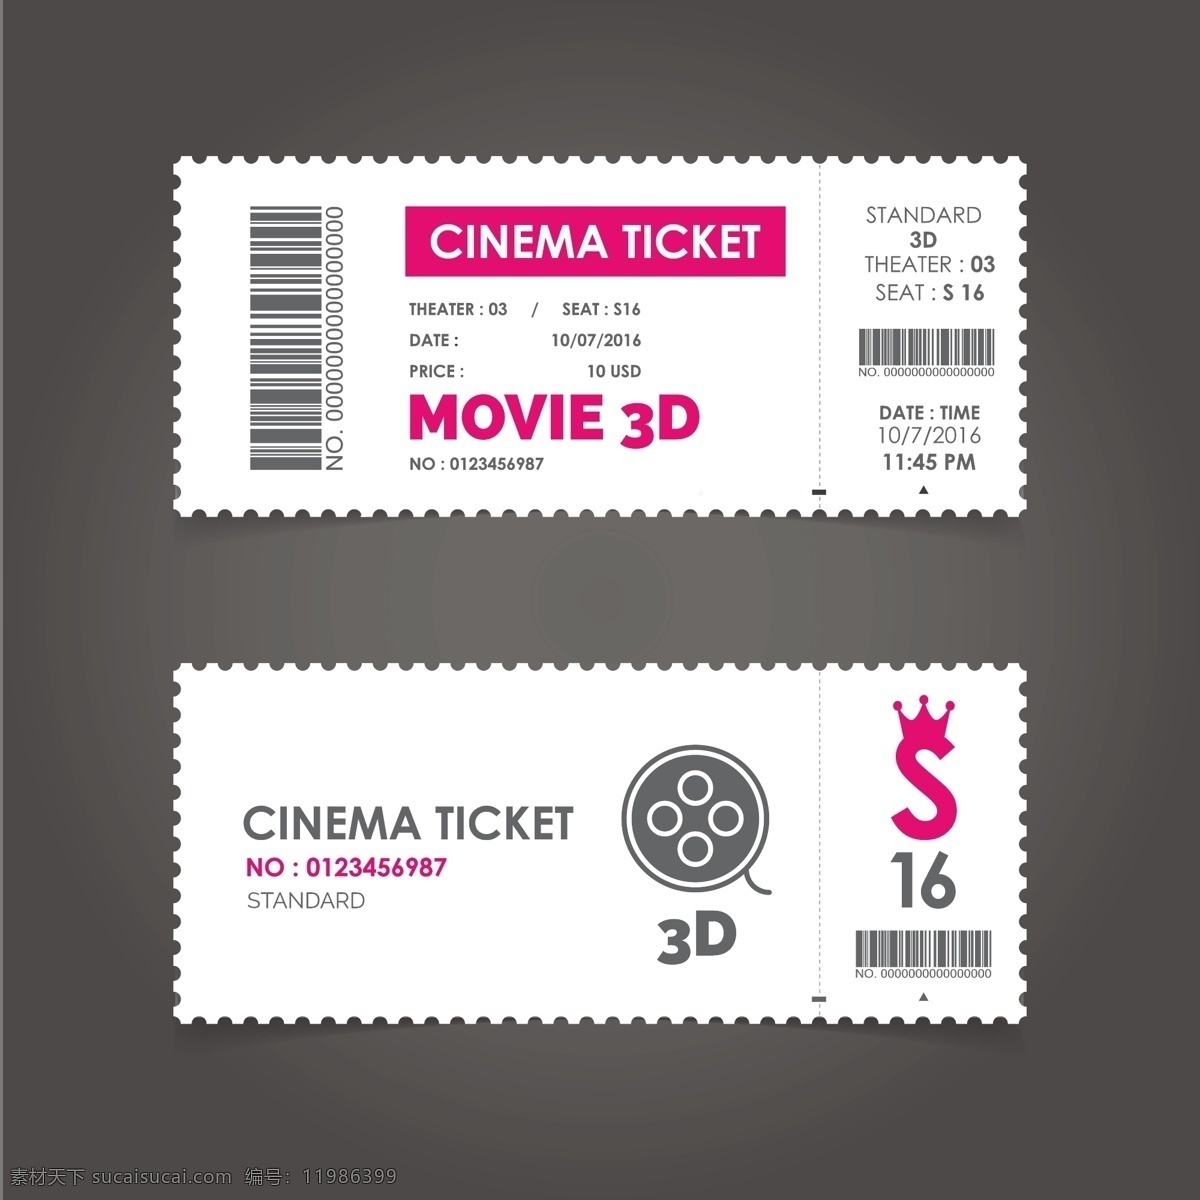 粉红色 矢量 电影票 粉红色电影票 矢量电影票 卡券 白色